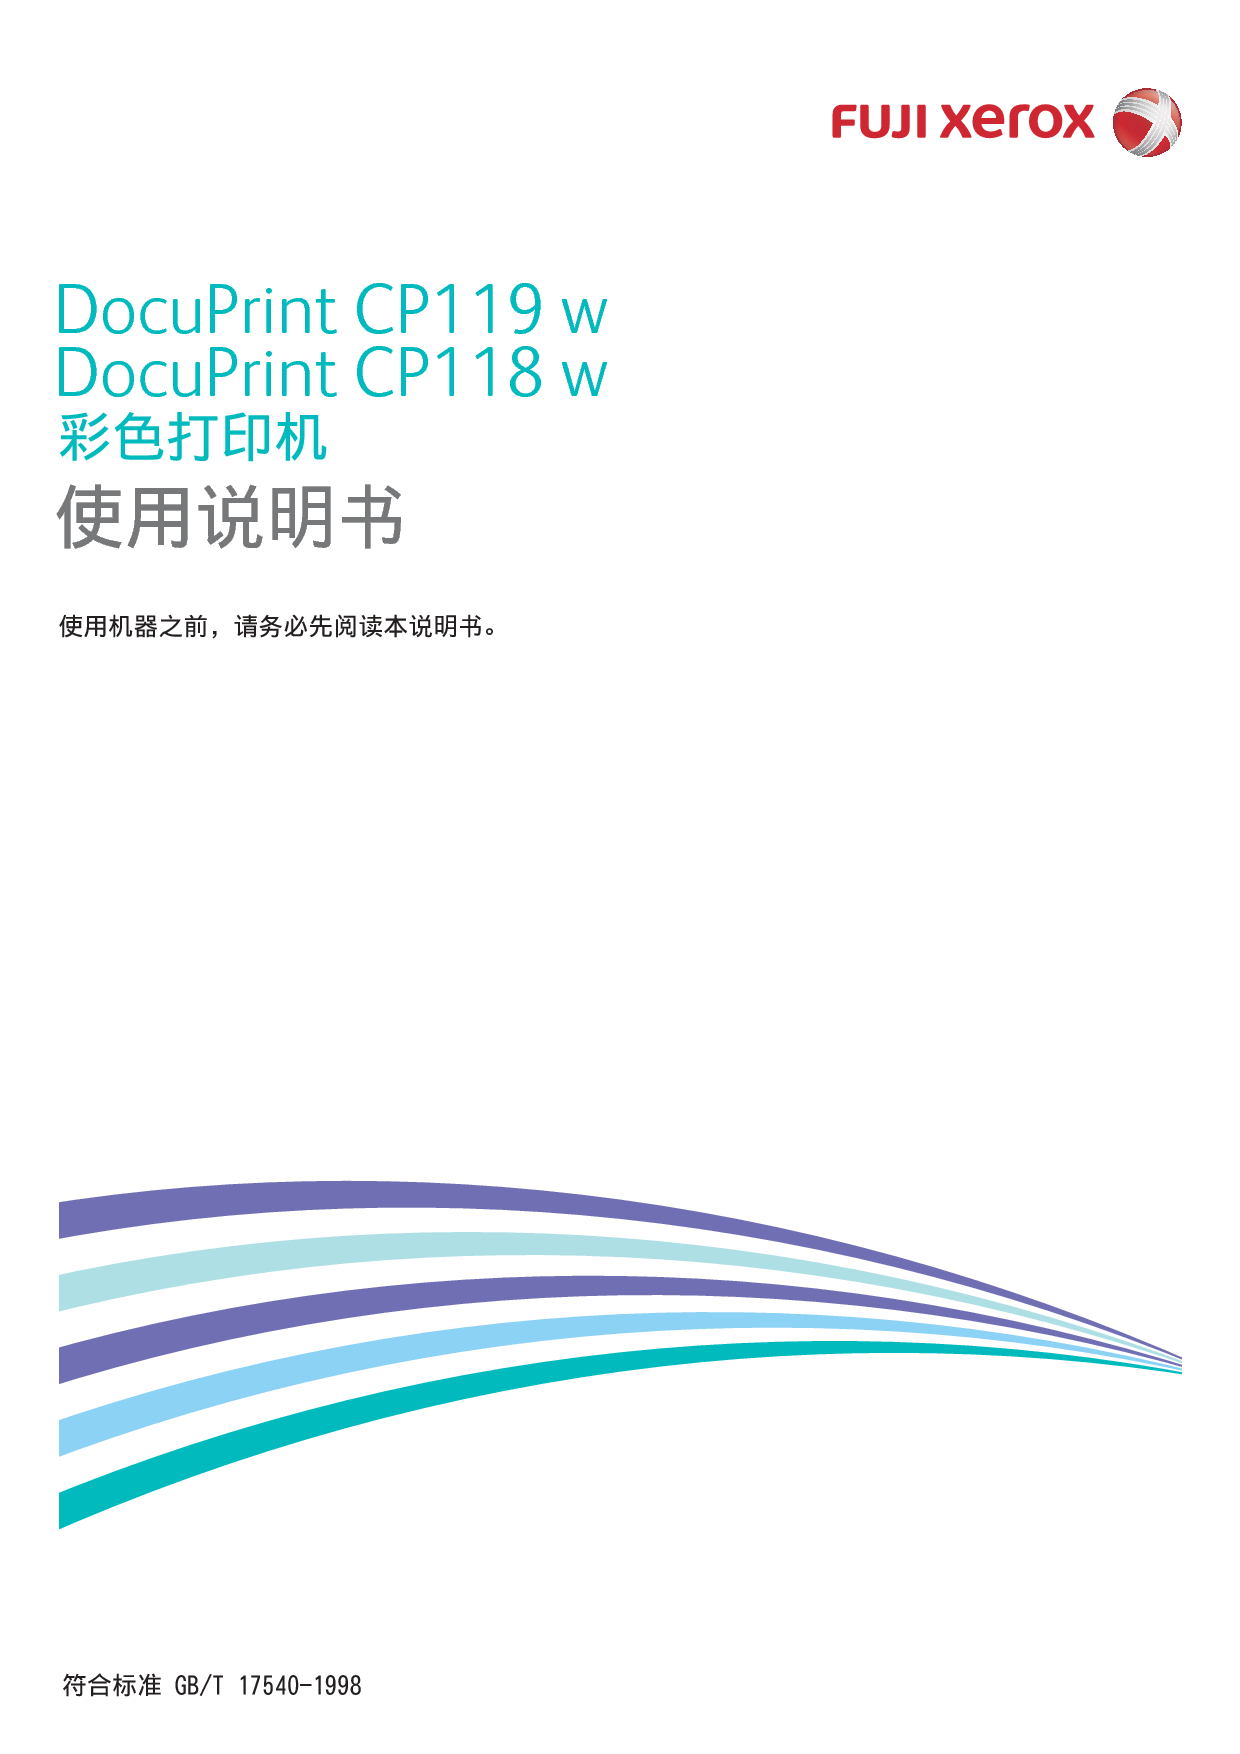 富士施乐 Fuji Xerox DocuPrint CP118 w 使用说明书 封面